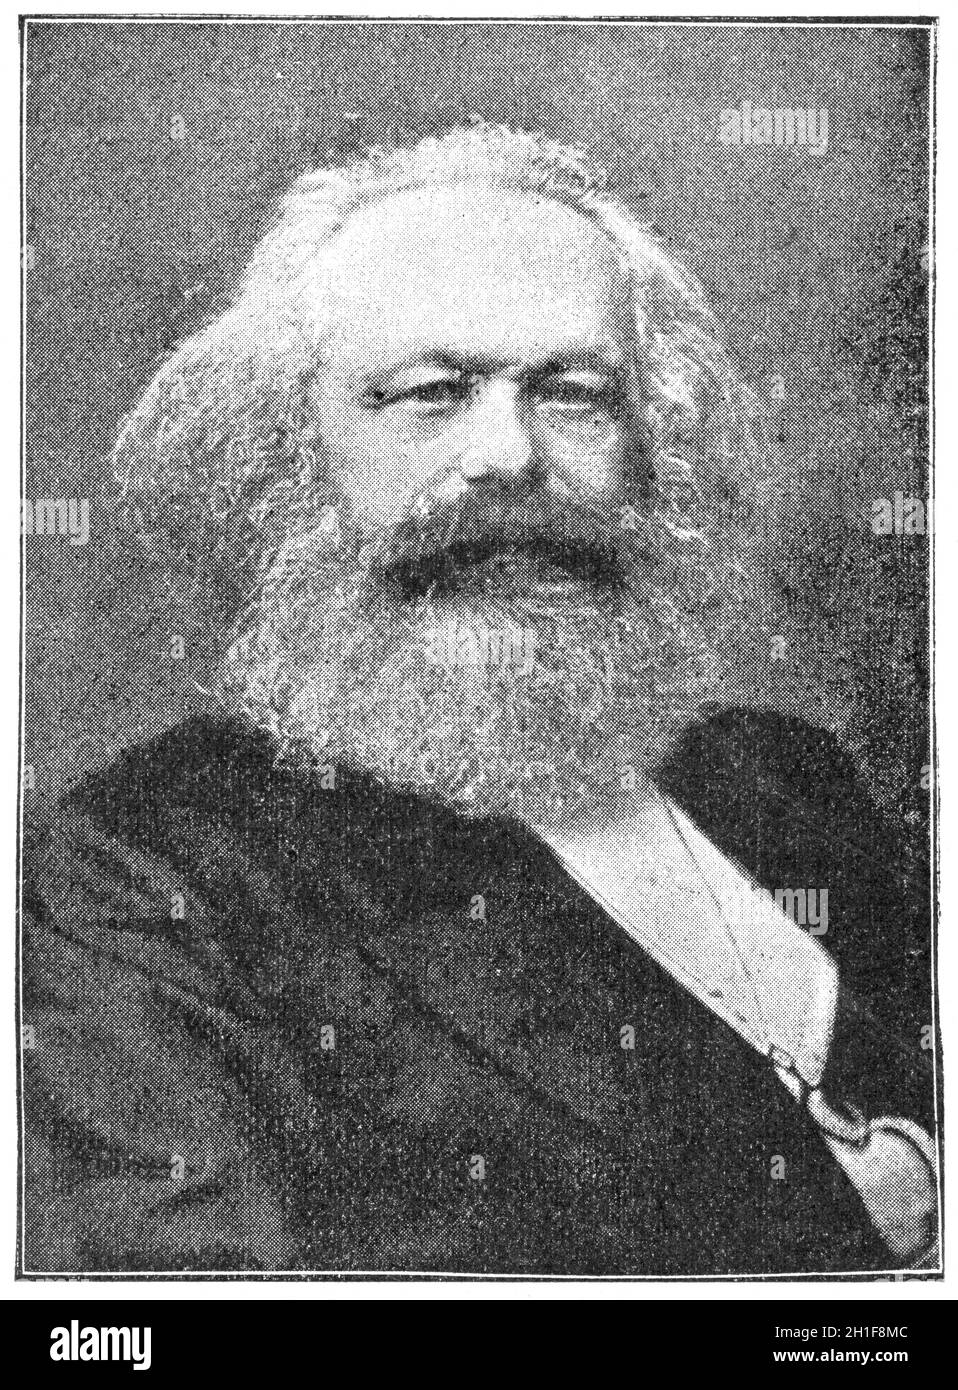 Portrait de Karl Marx - un philosophe allemand, un économiste, un historien, un sociologue, un théoricien politique, un journaliste et un révolutionnaire socialiste. Illustrat Banque D'Images